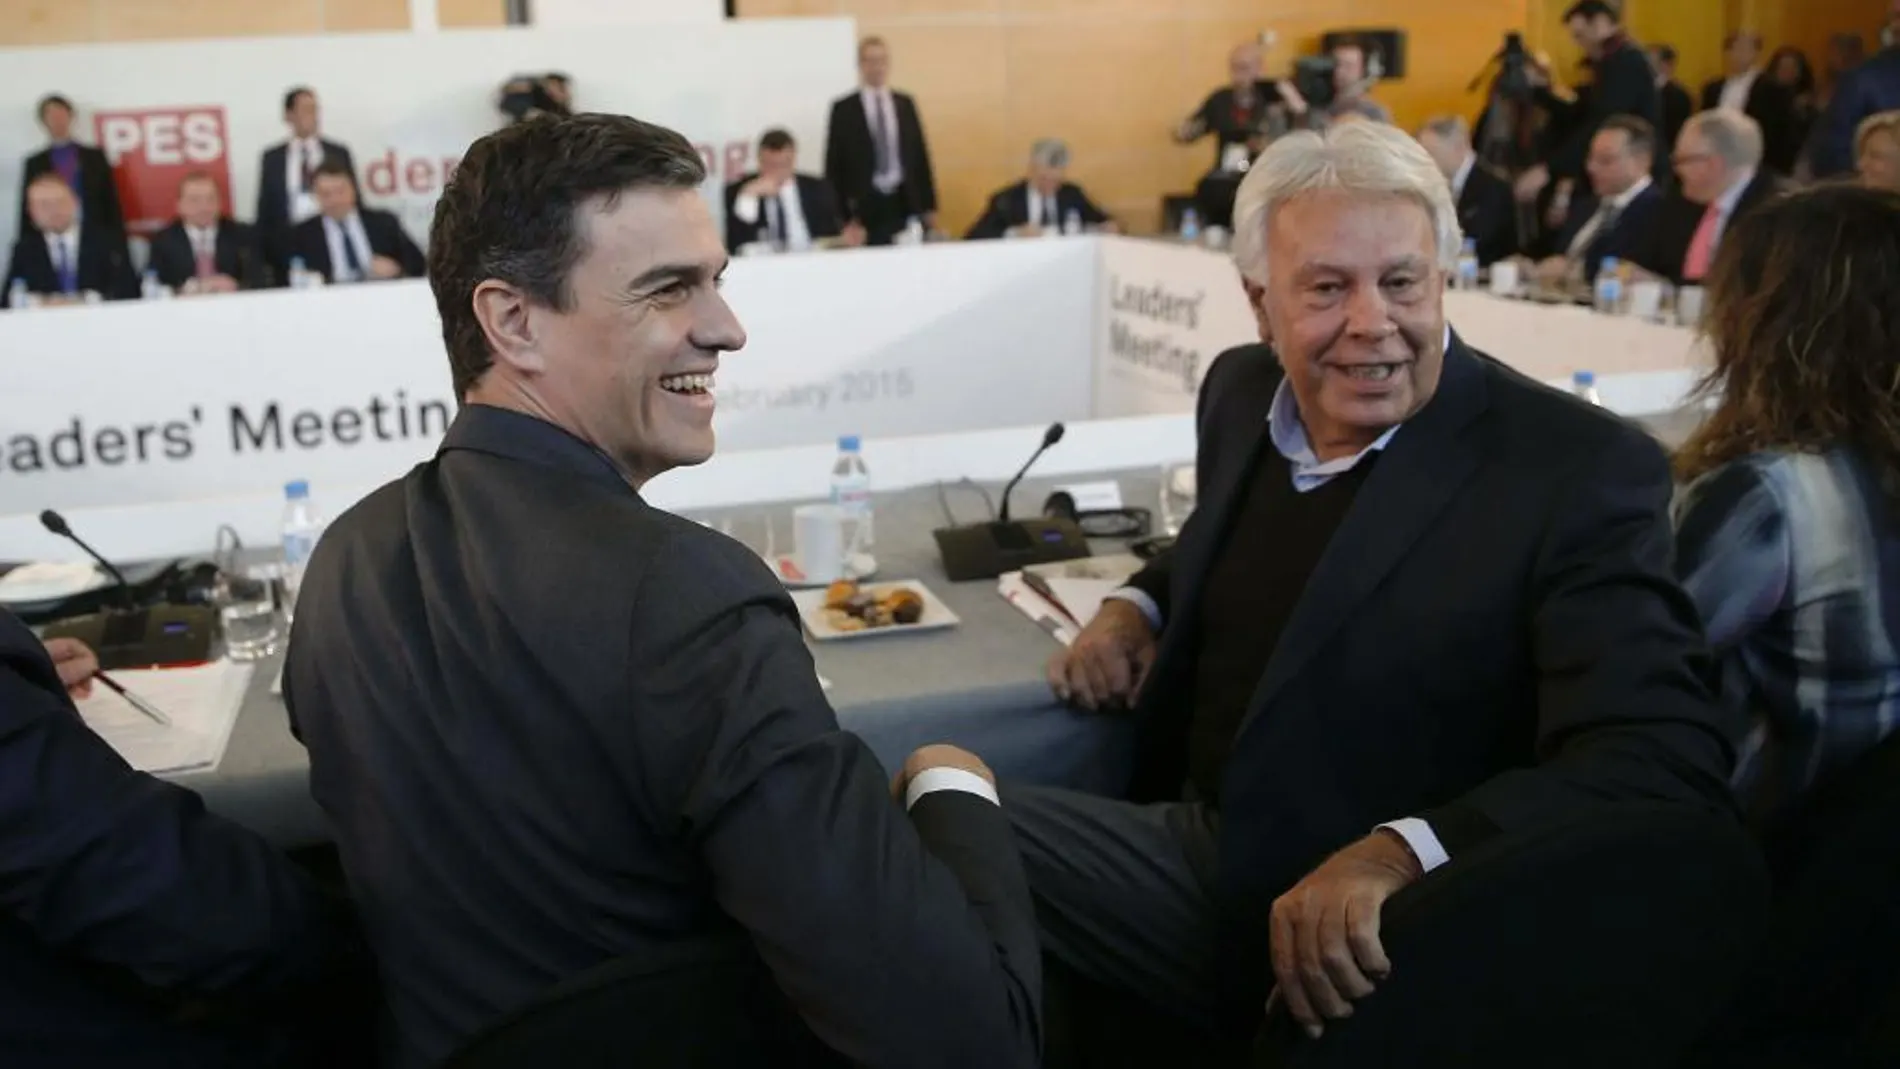 El líder del PSOE, Pedro Sánchez (i), y el expresidente del Gobierno, Felipe González (d), al inicio de la reunión de representantes del Partido de los Socialistas Europeos (PES) en Madrid